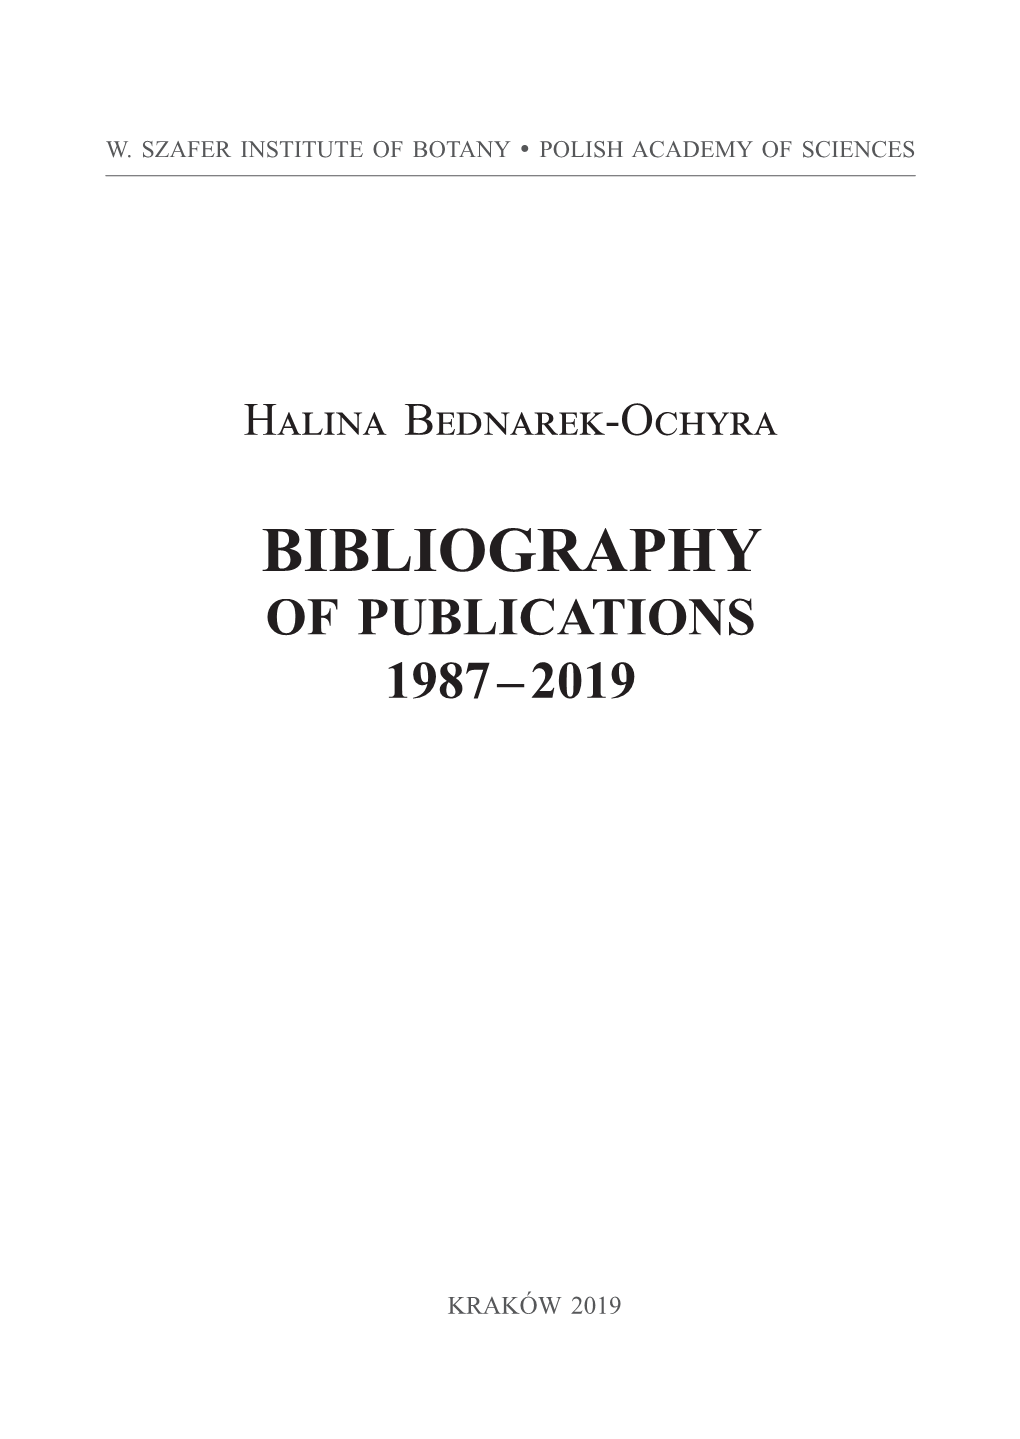 Bednarek-Ochyra Bibliography